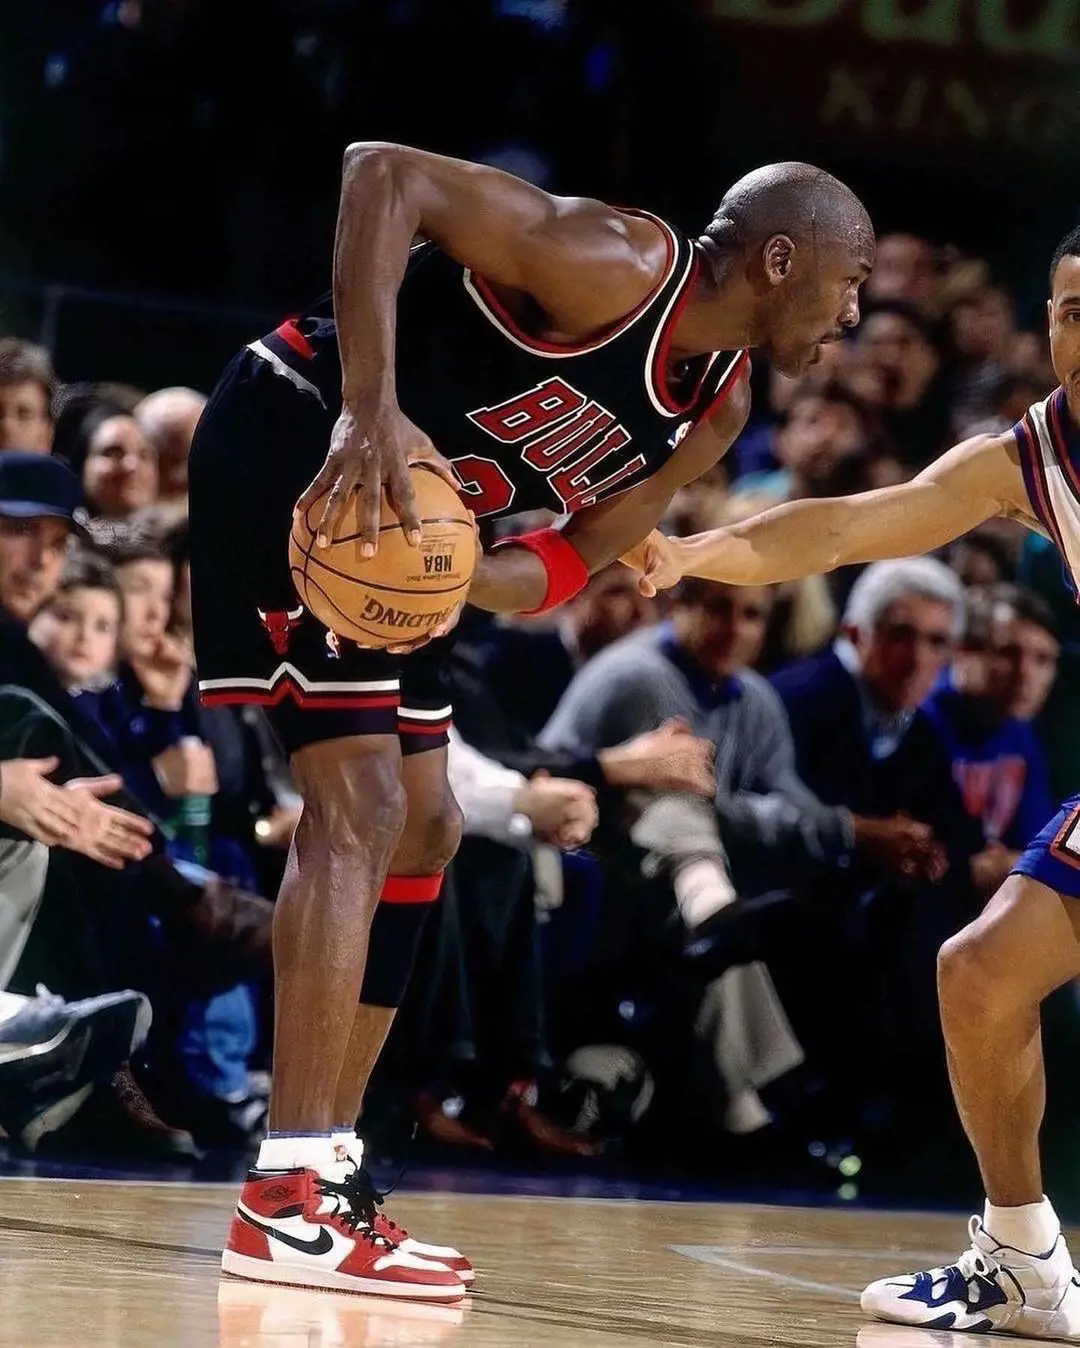 The Bulls legend had always been bald in the NBA